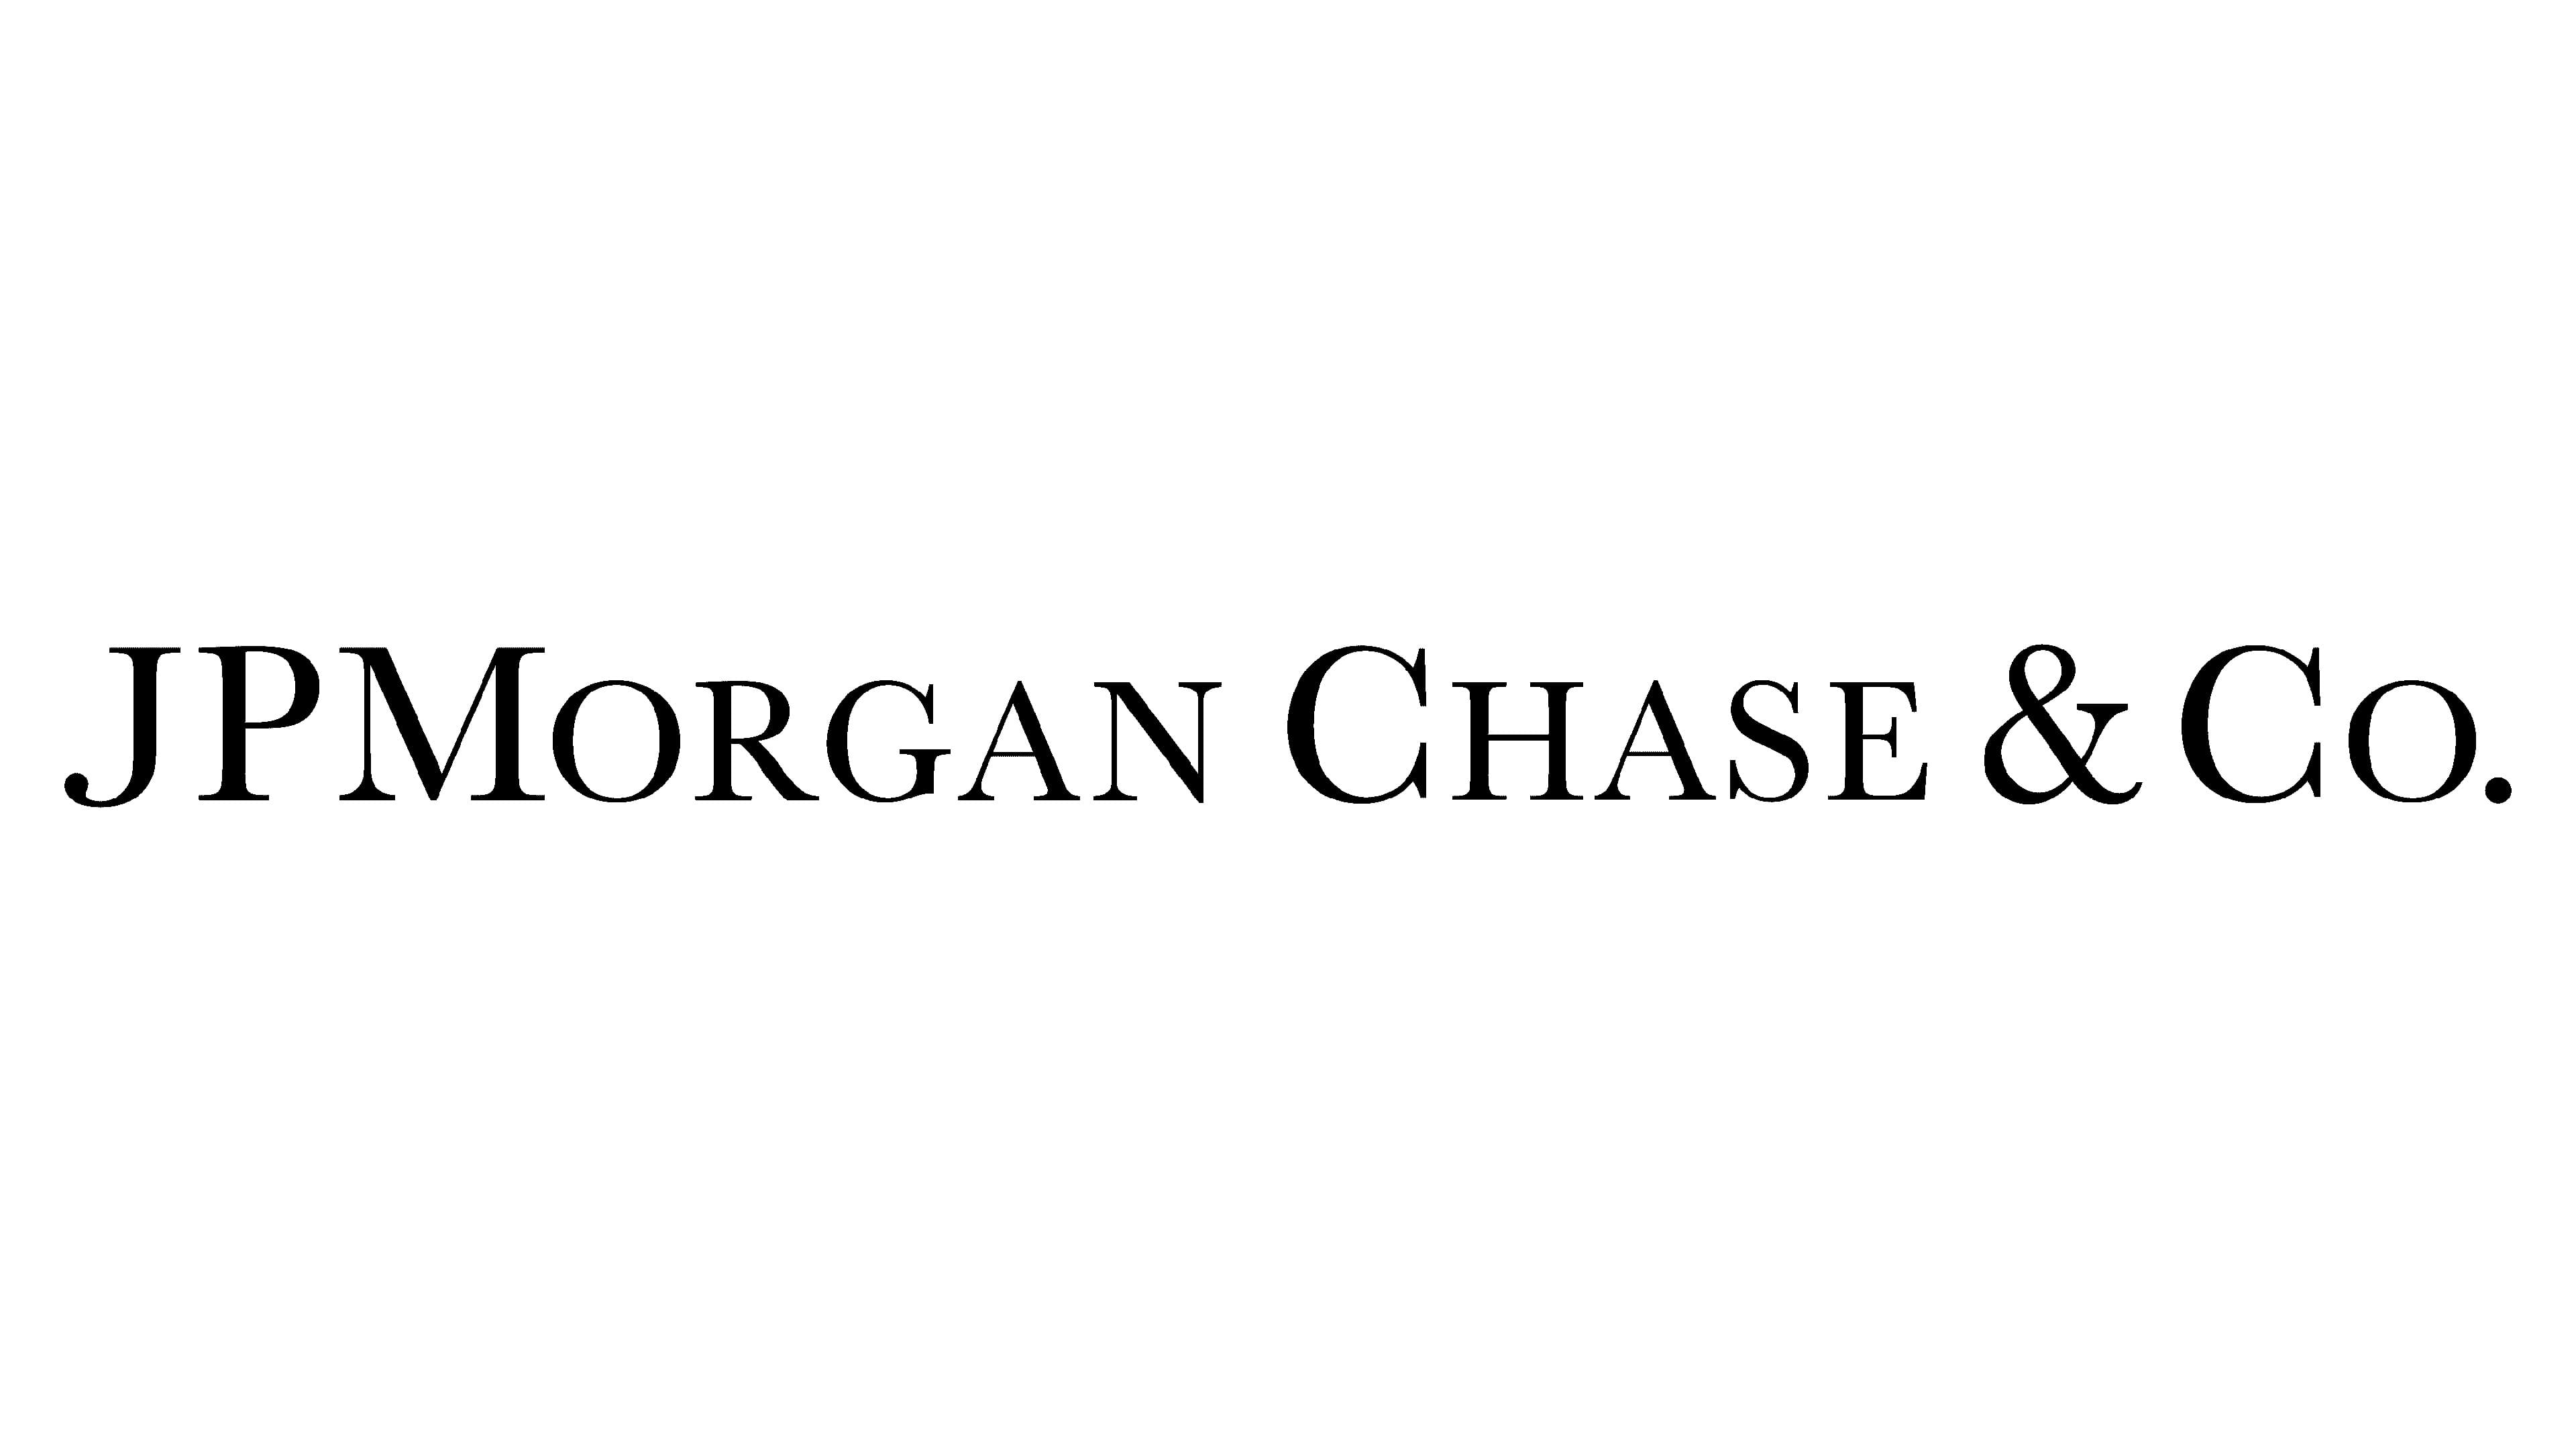 J.P. Morgan Chase & Co.